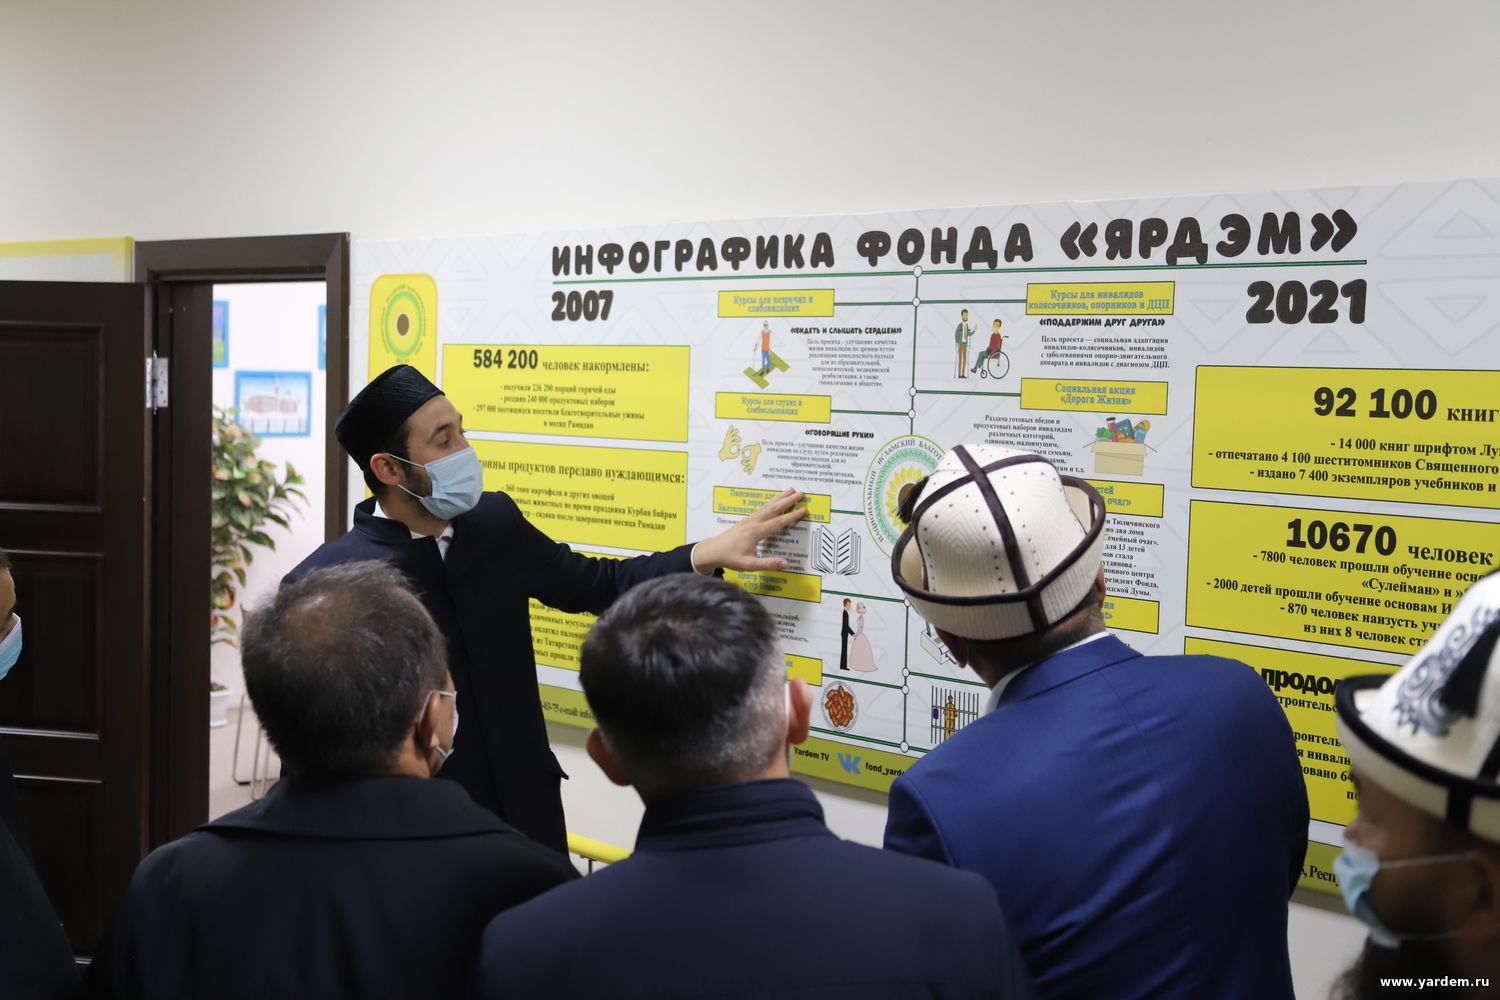 Комплекс фонда «Ярдэм» посетила делегация из Республики Кыргызстан. Общие новости